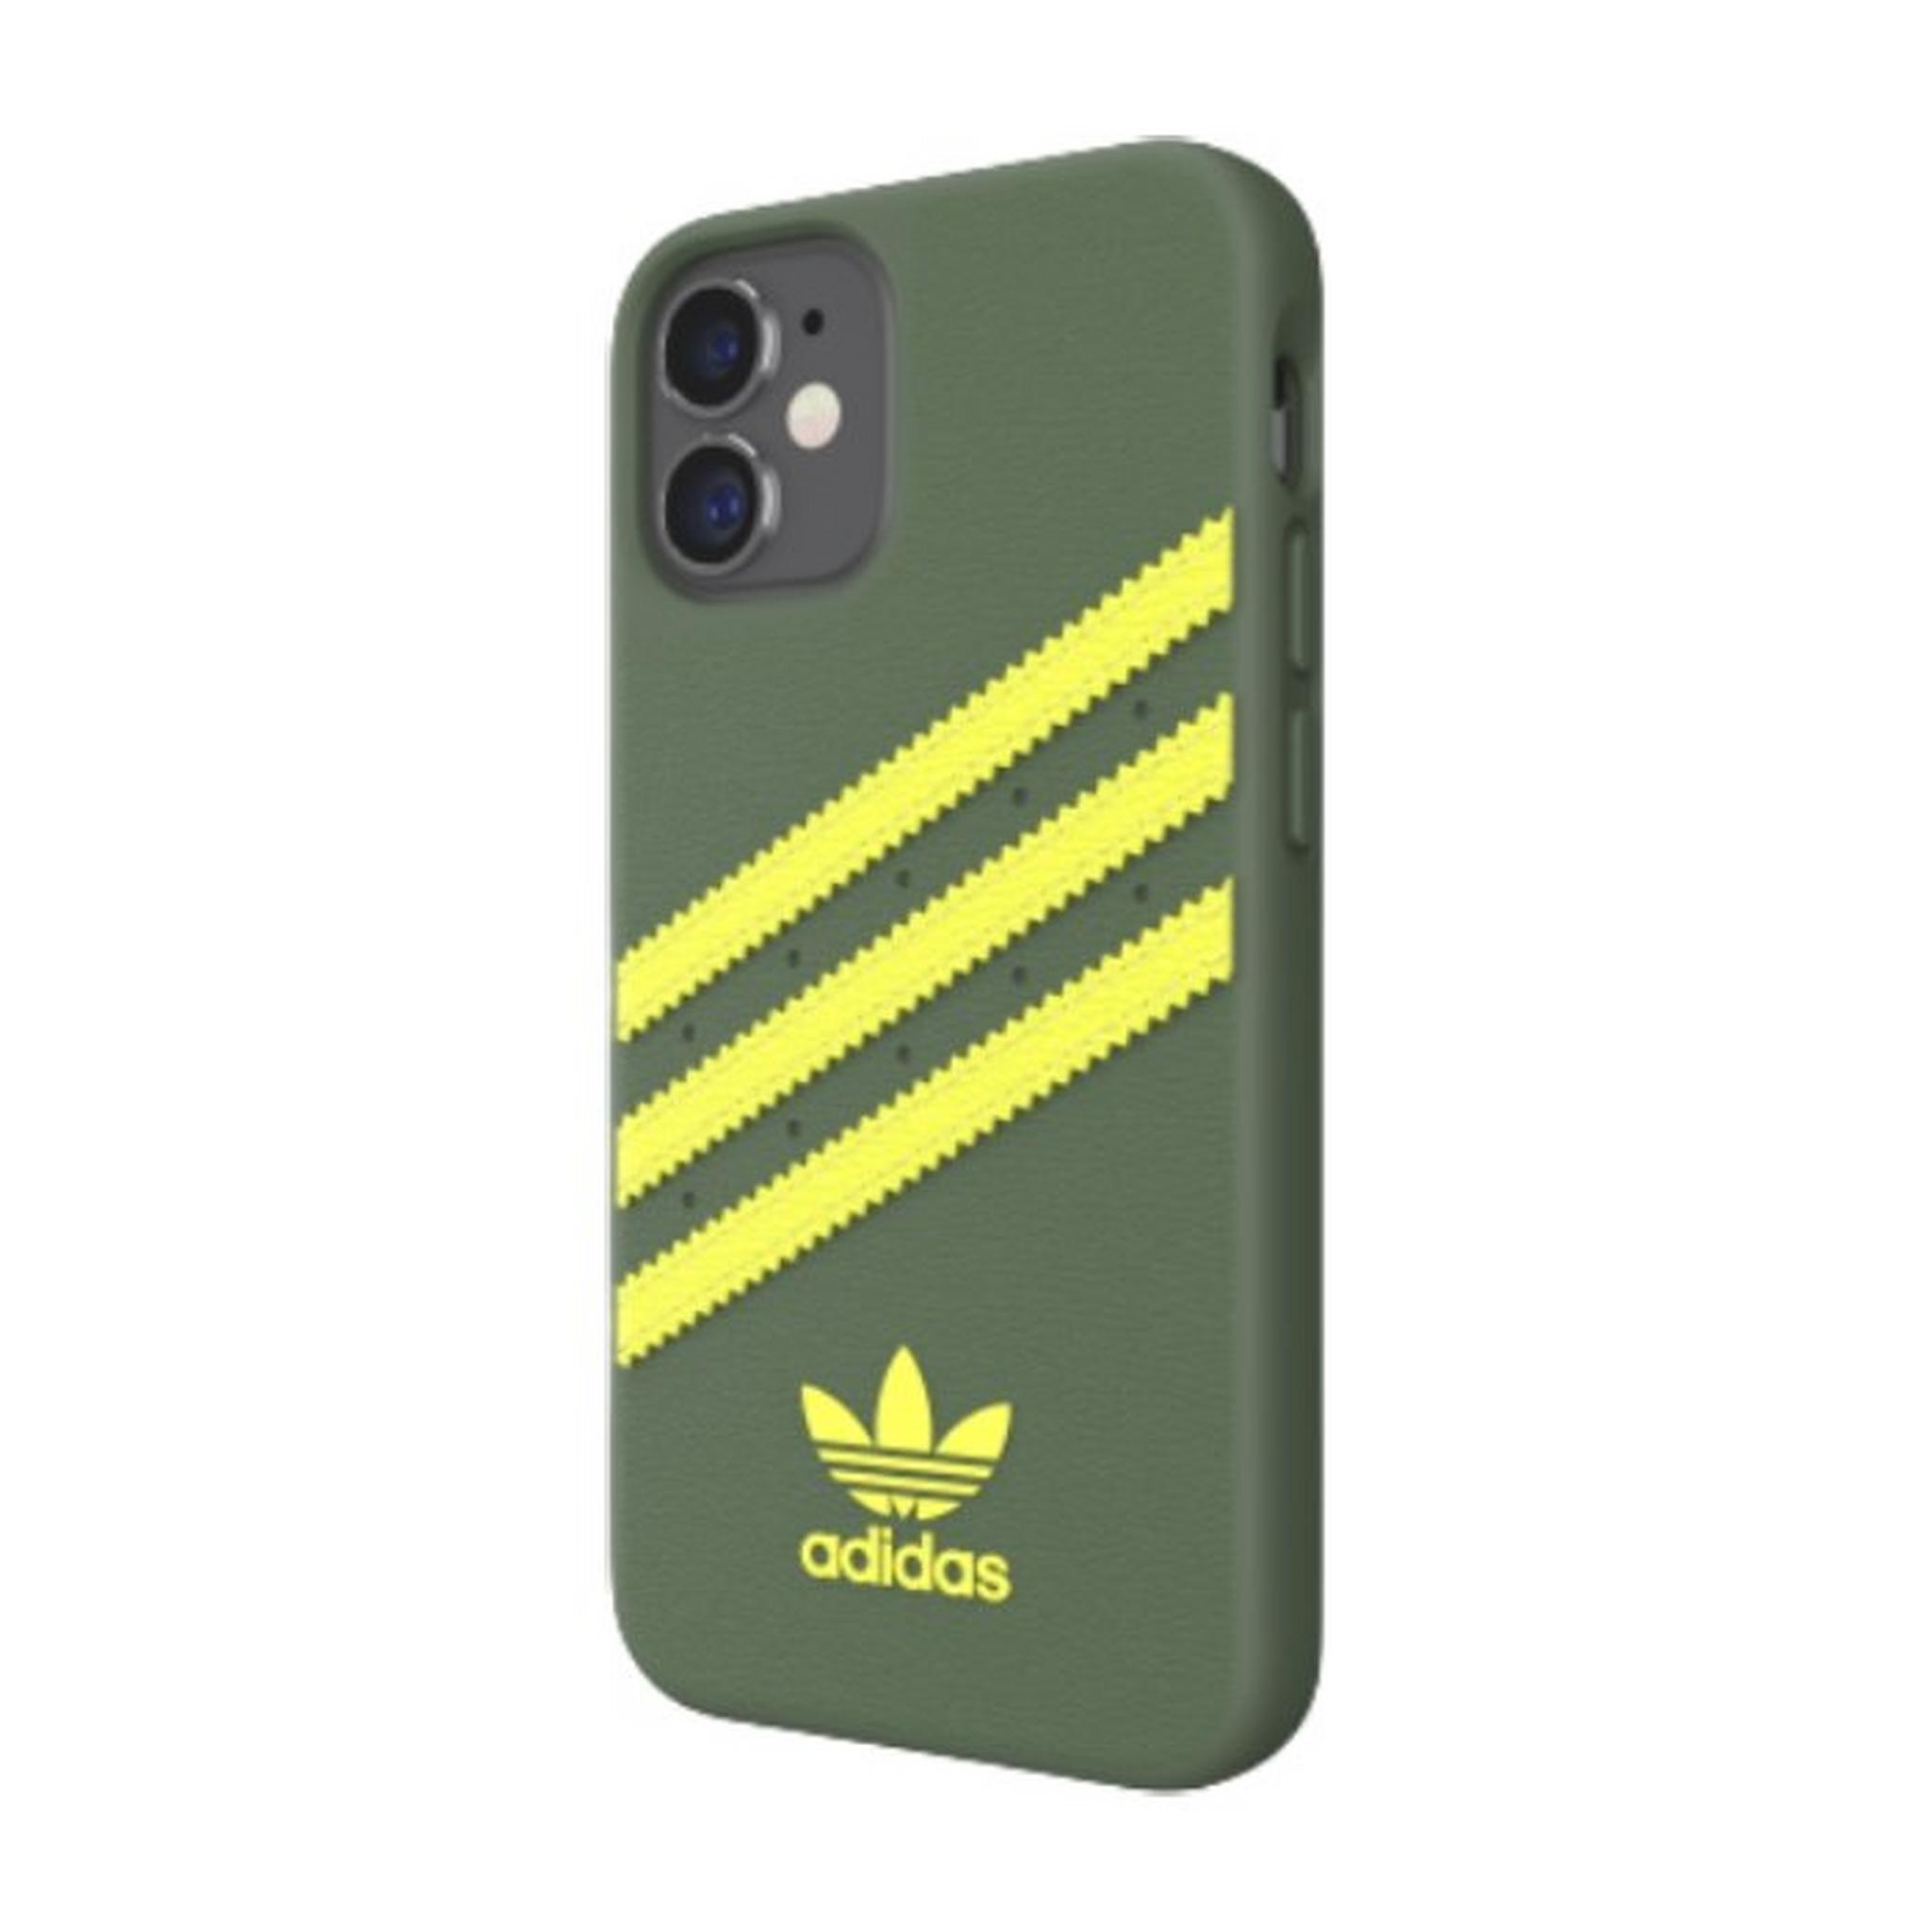 Adidas Original iPhone 12 Mini Moulded Case - Wild Pine